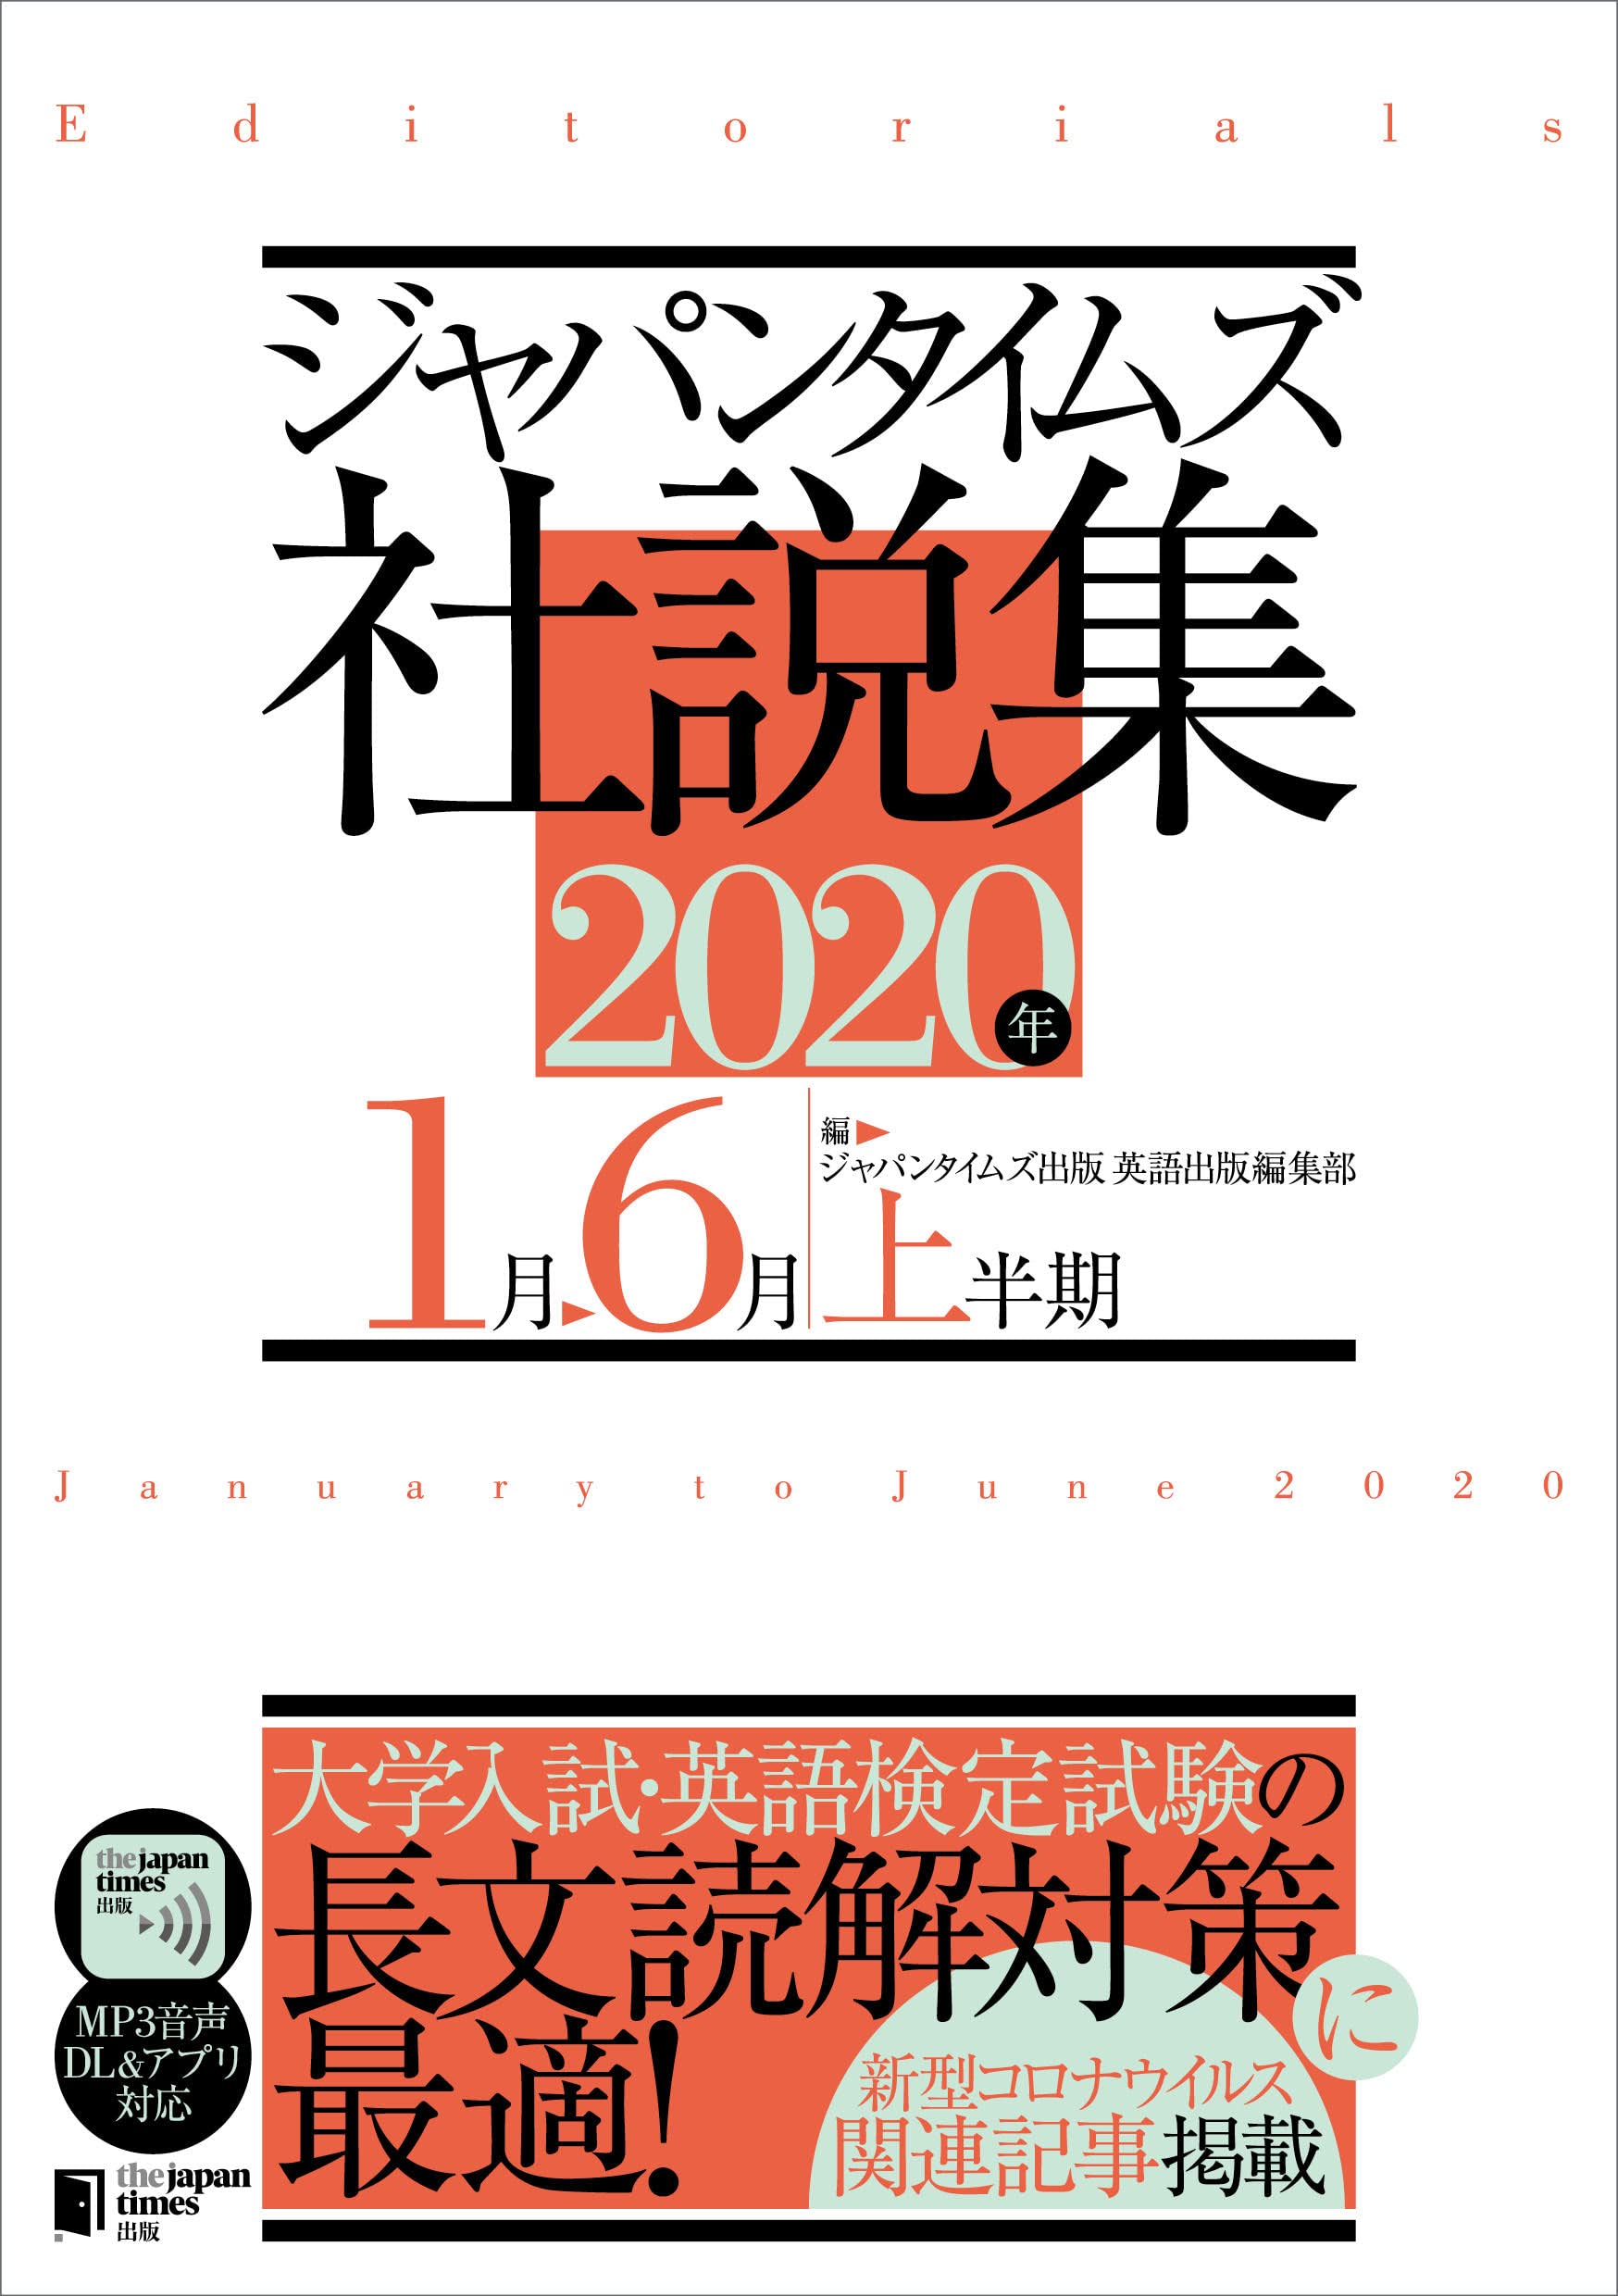 ジャパンタイムズ社説集 2020年上半期(MP3音声無料ダウンロード)(中古品)